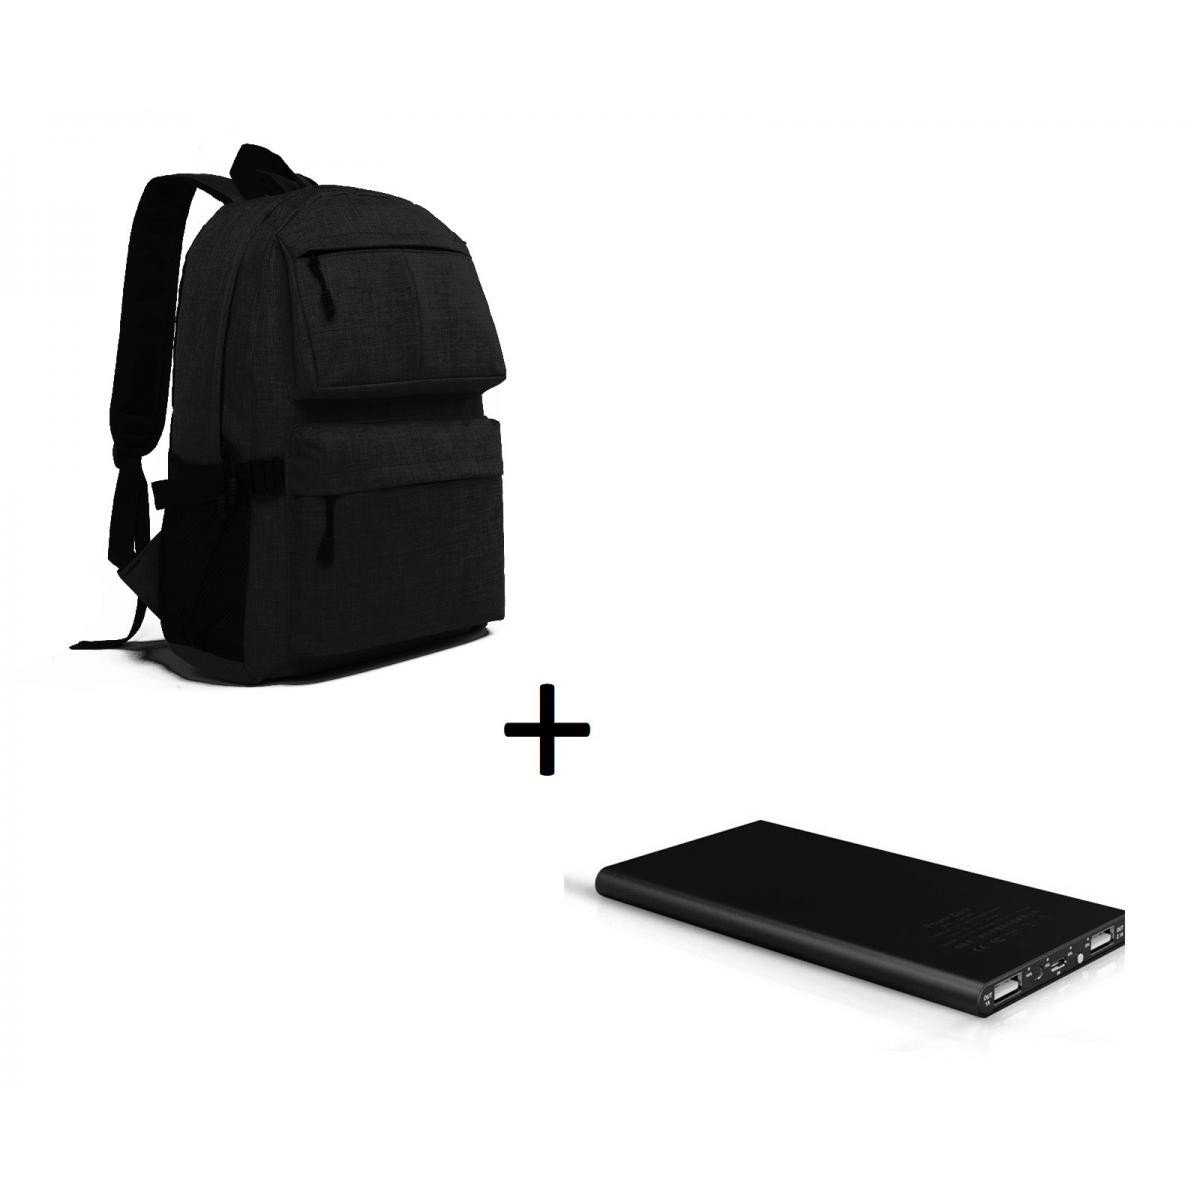 Shot - Pack pour SAMSUNG Galaxy A70 Smartphone (Batterie Plate 6000 mAh 2 ports + Sac à dos avec prise USB integre) (NOIR) - Chargeur secteur téléphone